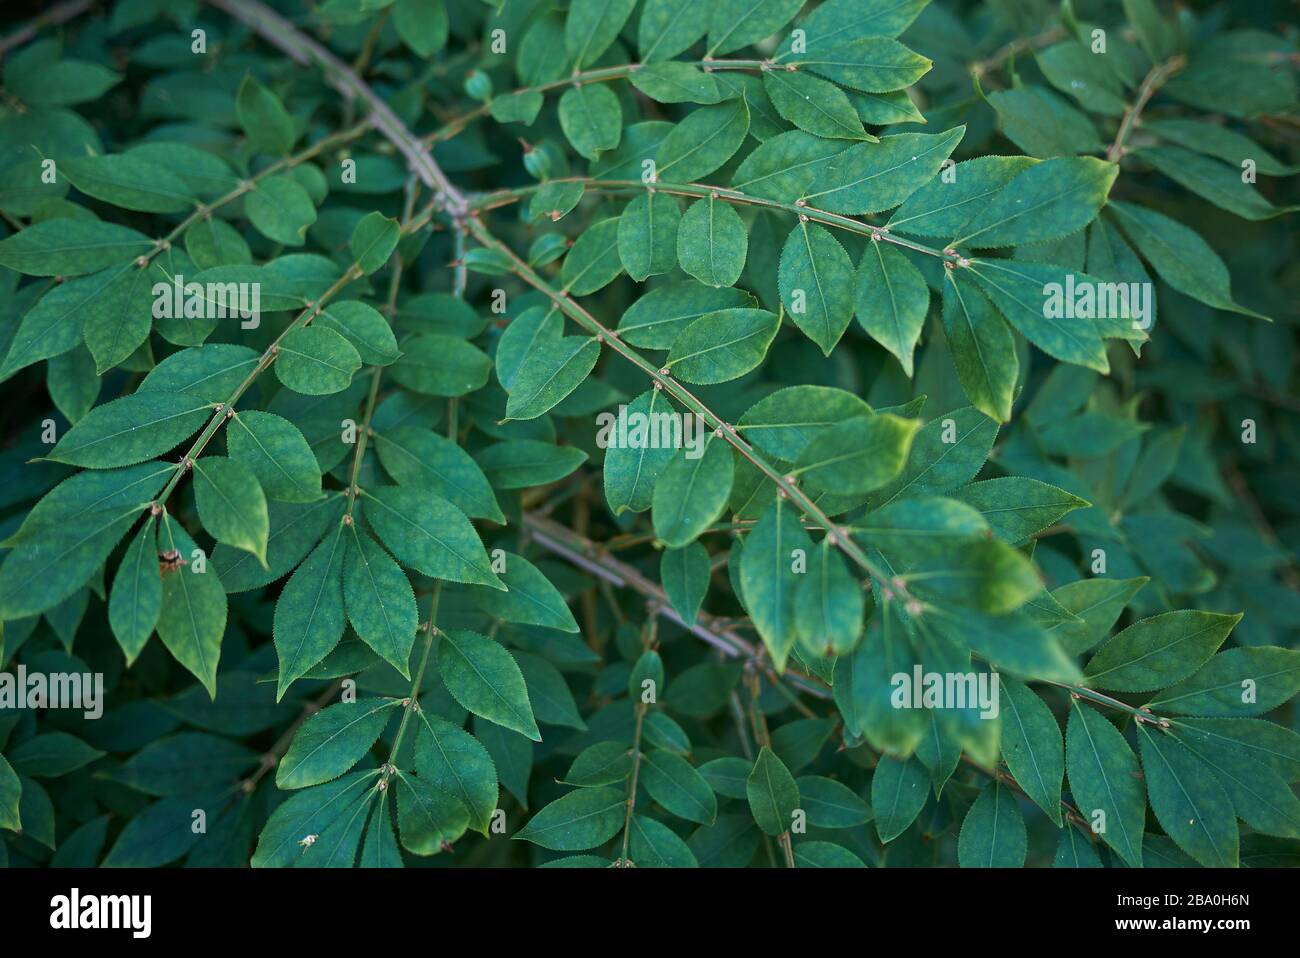 Euonymus alatus feuillage vert frais Banque D'Images